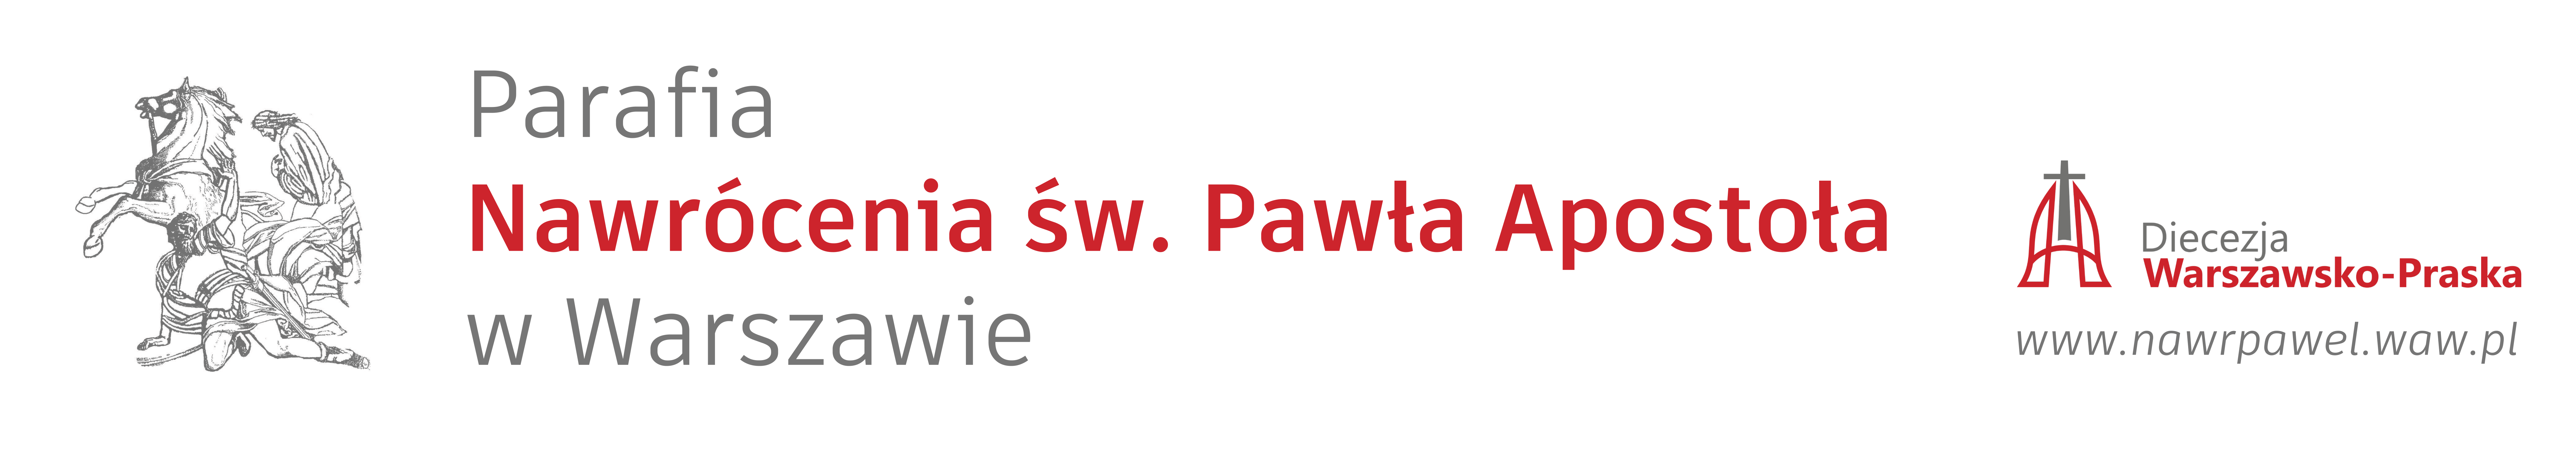 Parafia Nawrócenia św. Pawła Apostoła w Warszawie 